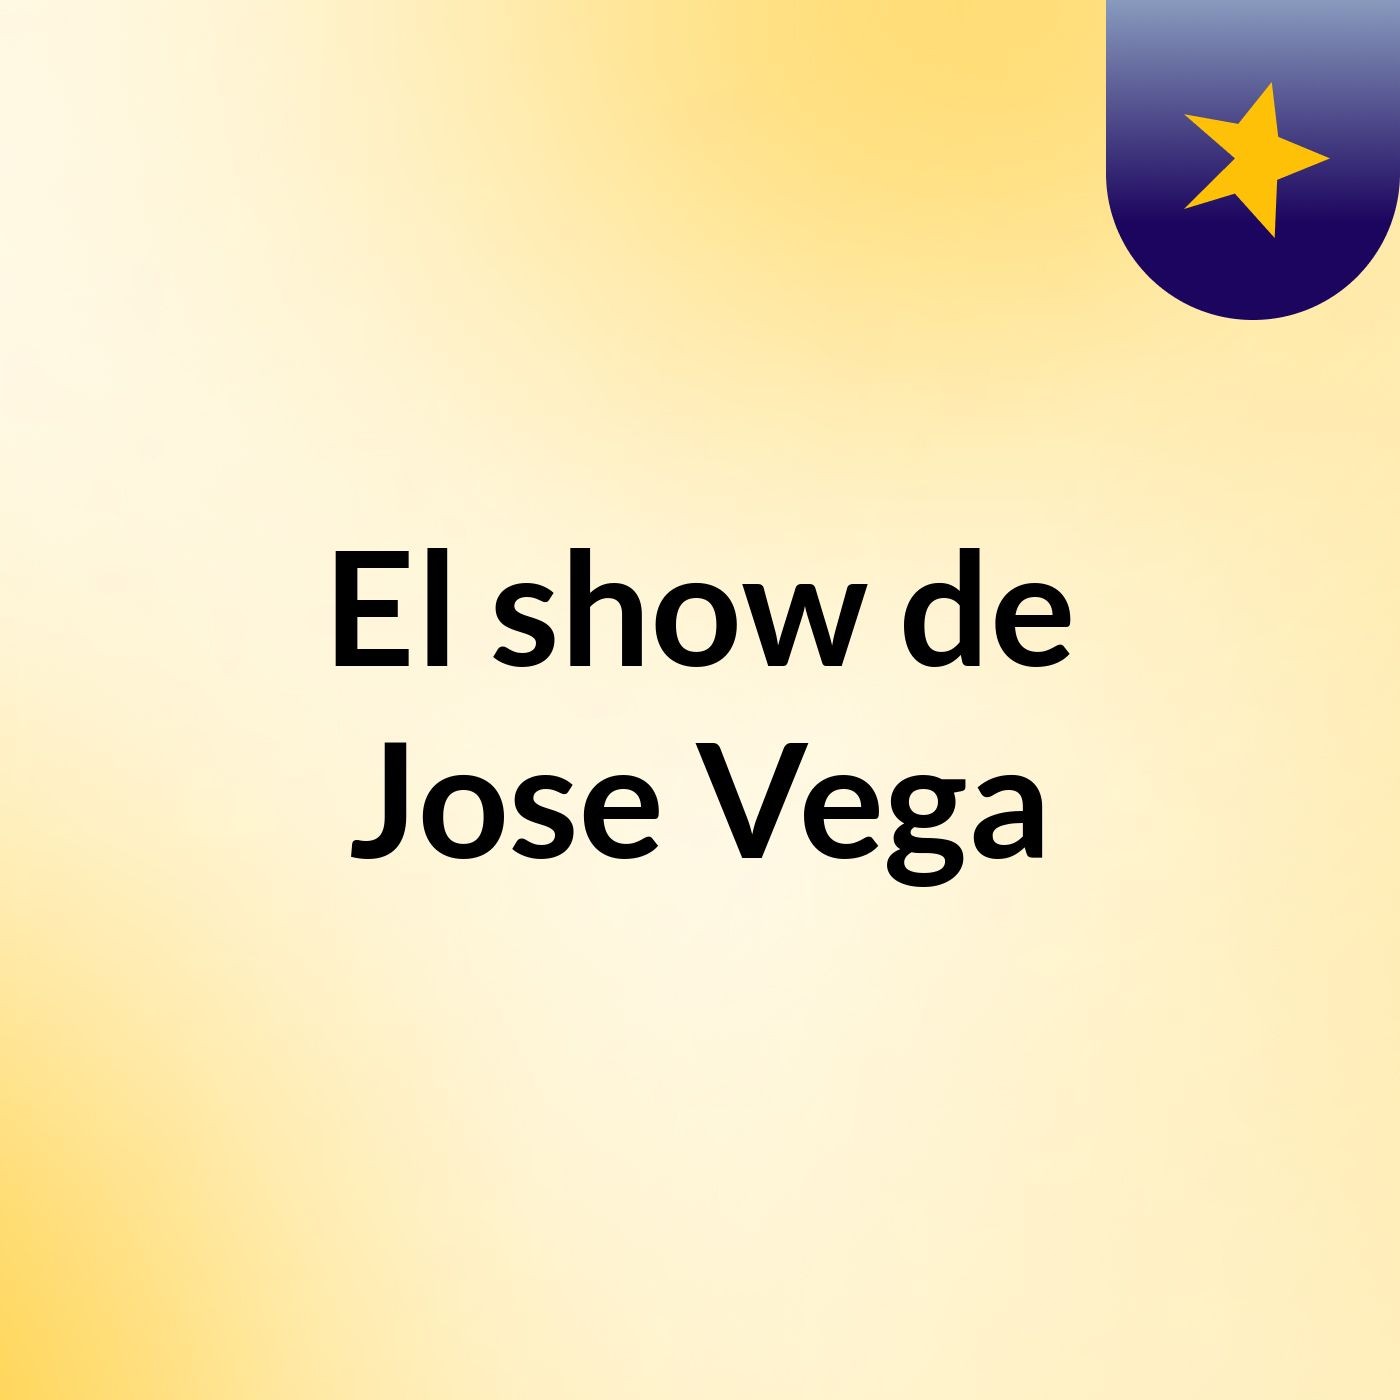 El show de Jose Vega